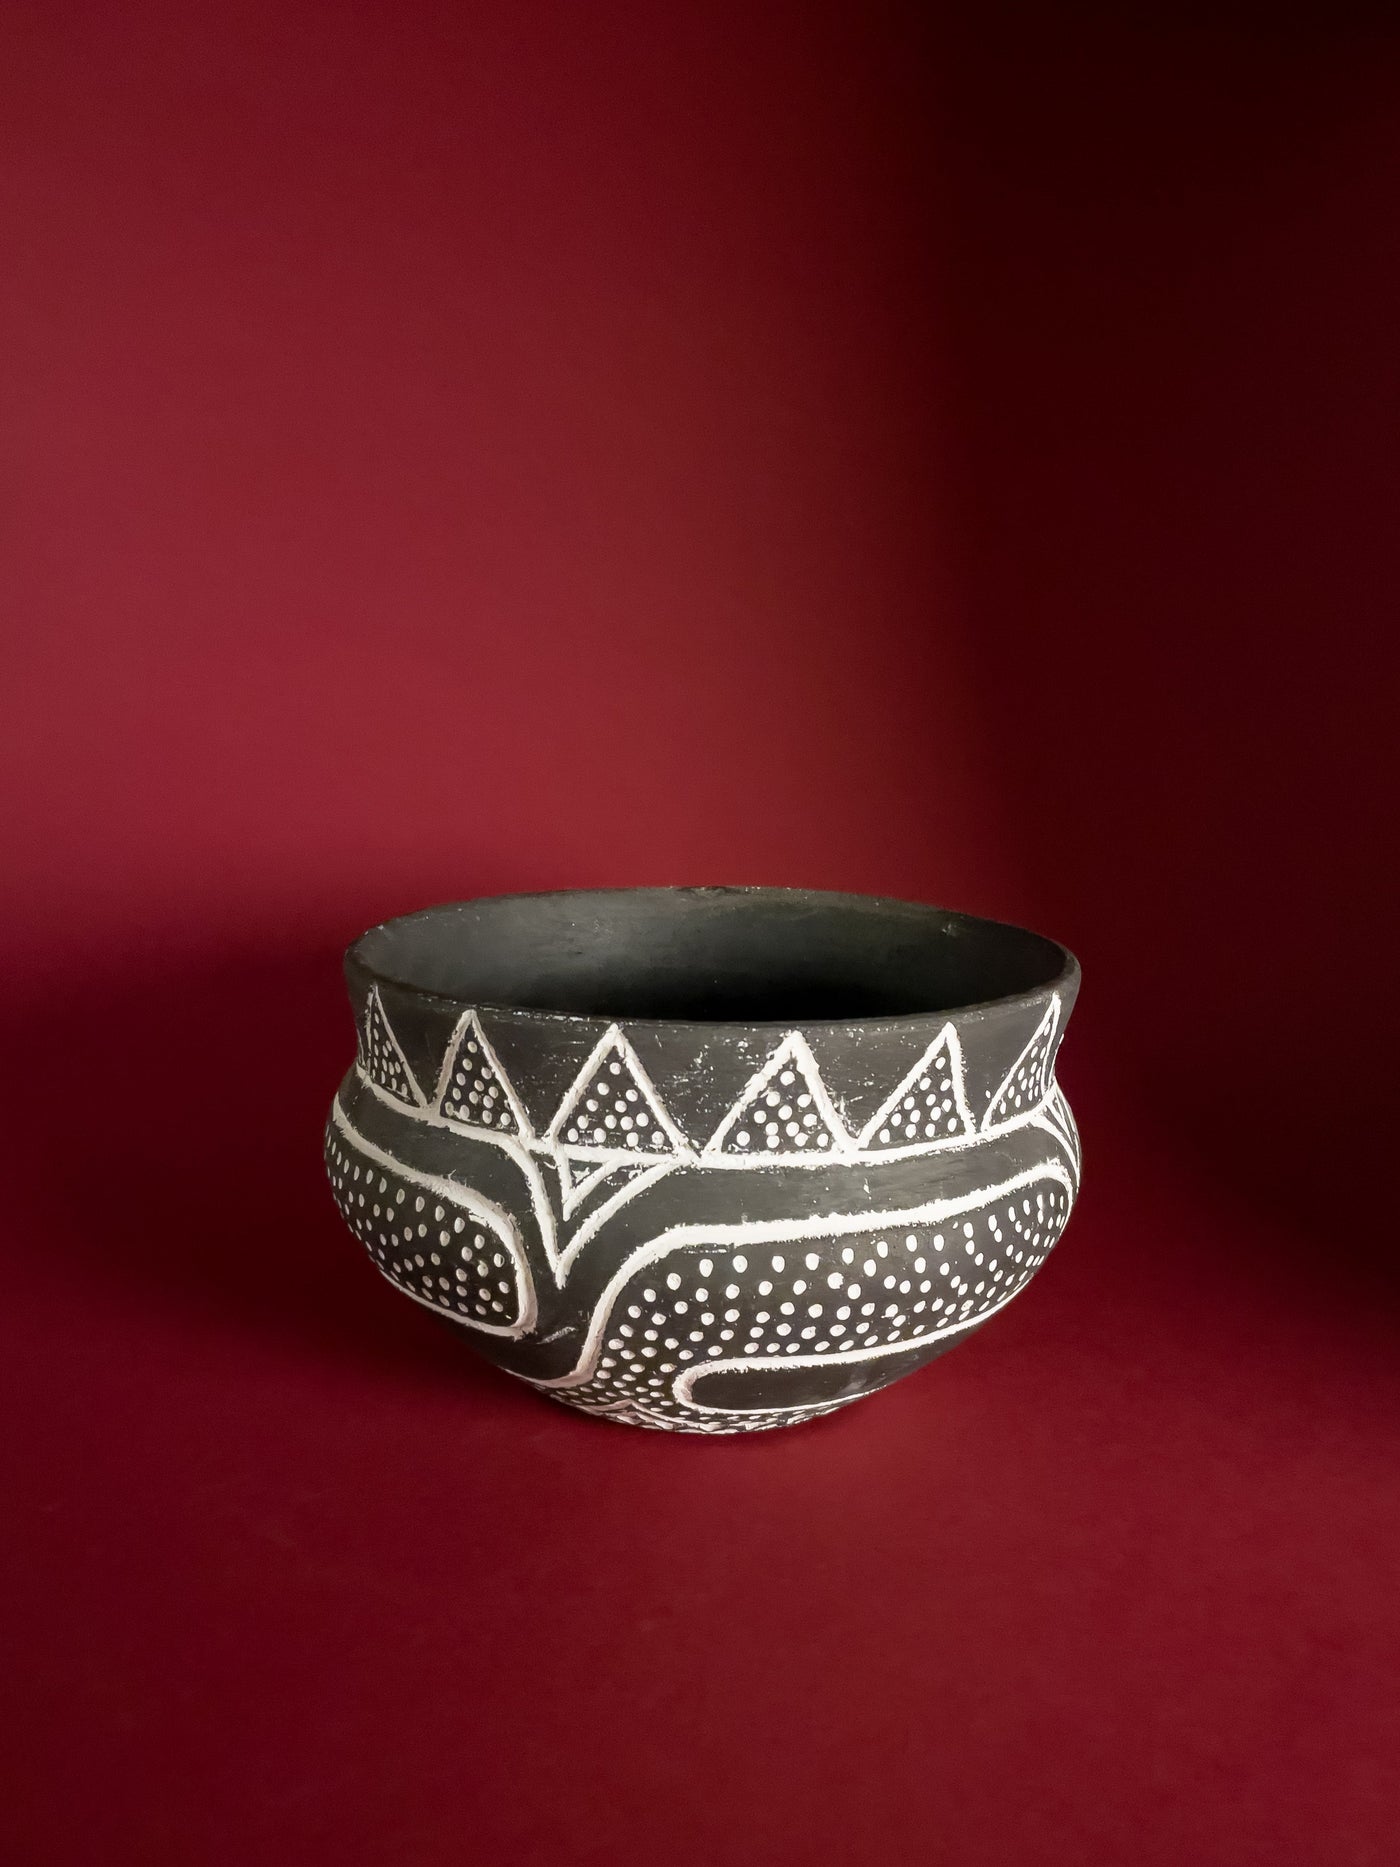 vas-decorativ-ceramica-vadastra-lucrat-manual-ornamente-liniare-gravate-cu-caolin-alb-triunghiuri-si-puncte-mare-1